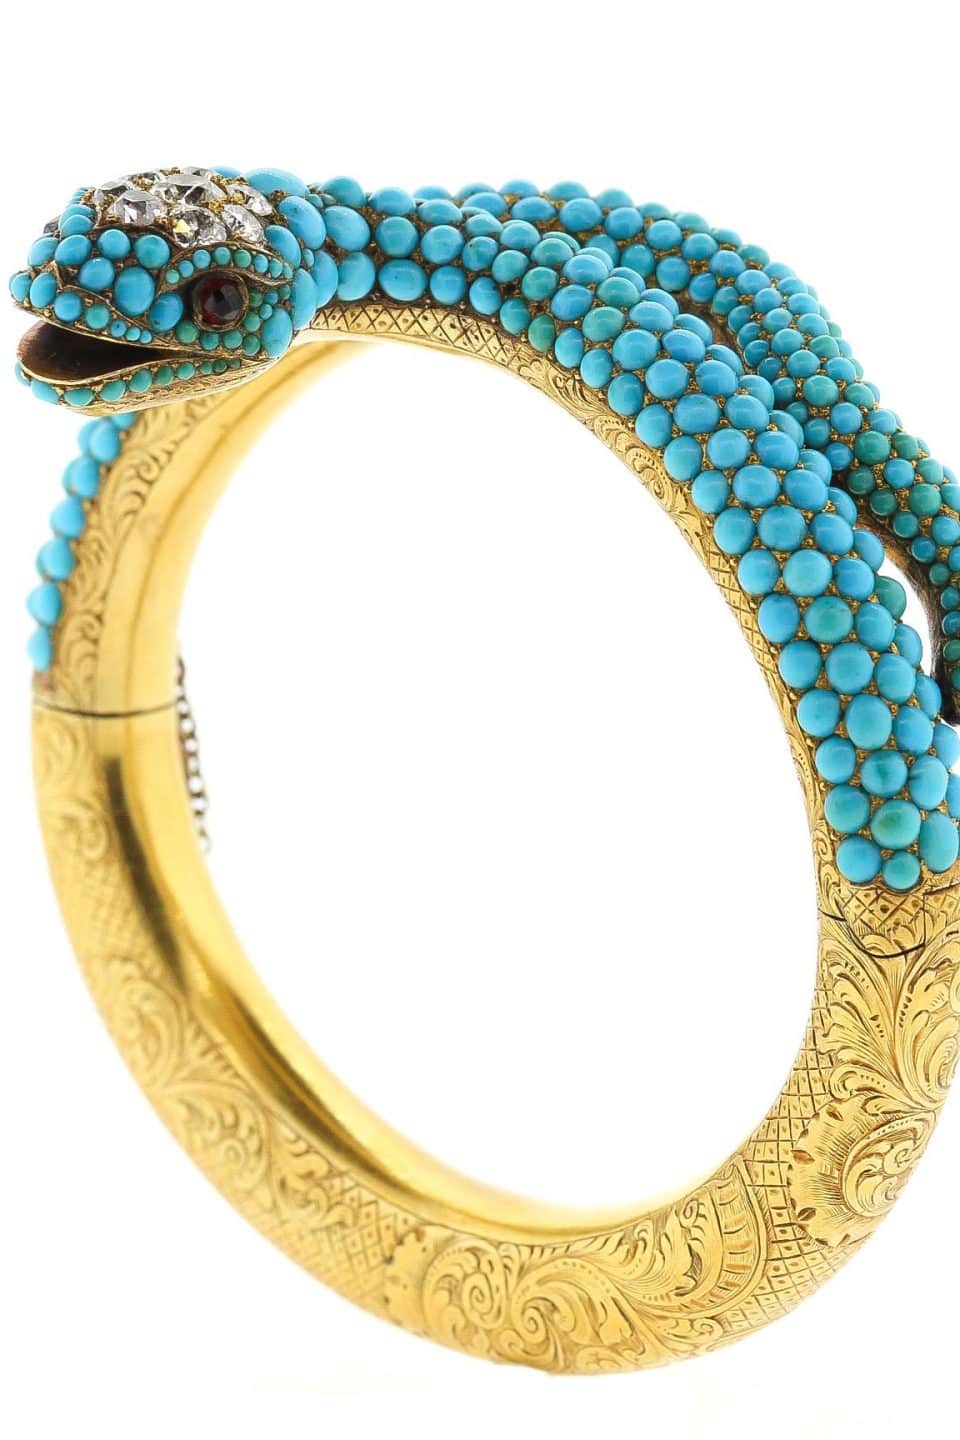 10 Extraordinary Vintage and Antique Gems, Handpicked by a Jewelry Aficionado